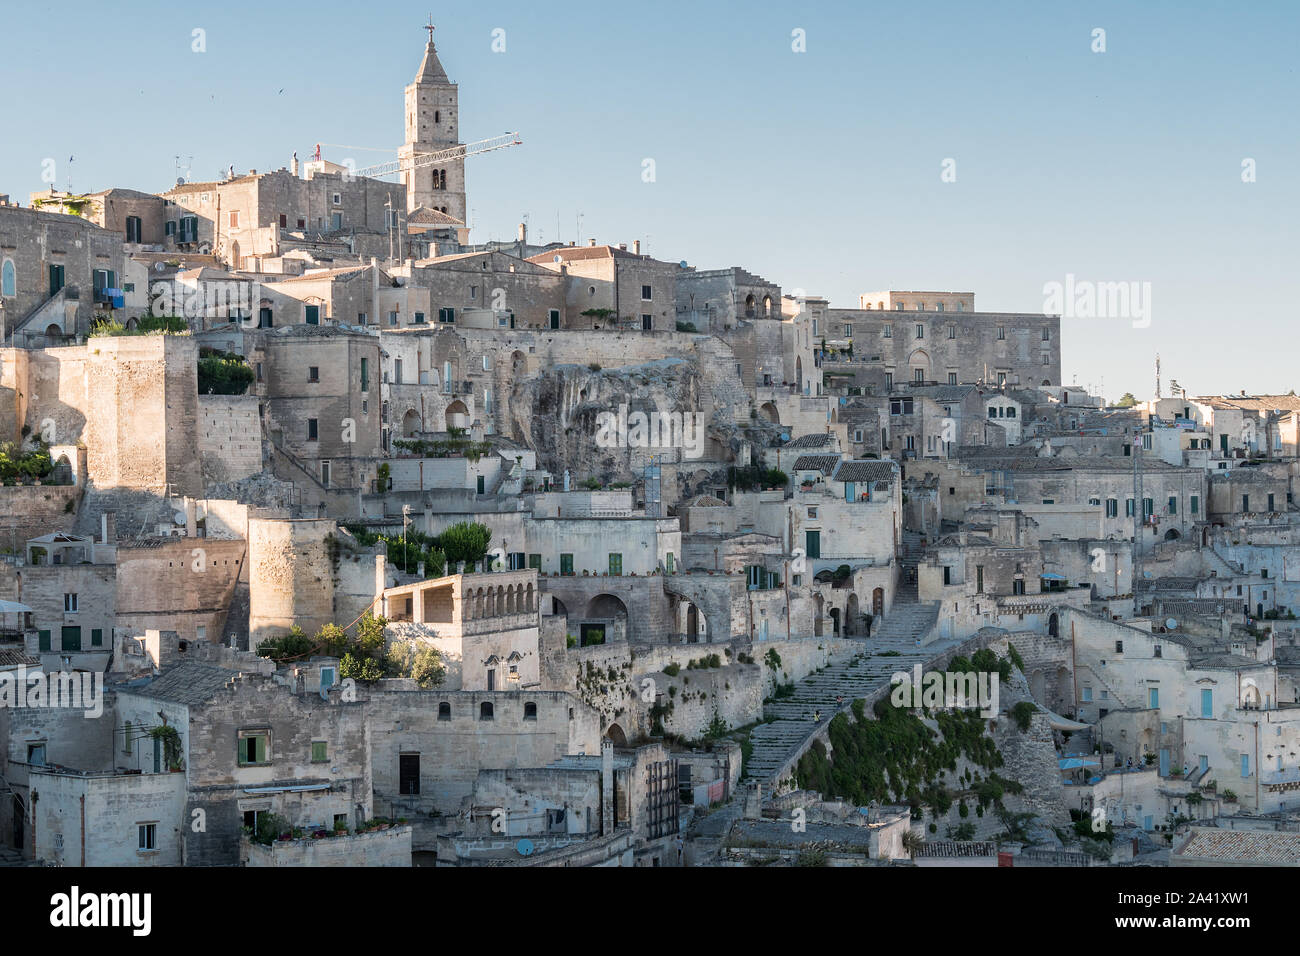 Skyline Luftbild der Altstadt von Matera, die wunderbare Stein Stadt im südlichen Italien, Matera ist eine Europäische Kulturhauptstadt 2019, UNESCO Weltkulturerbe Stockfoto